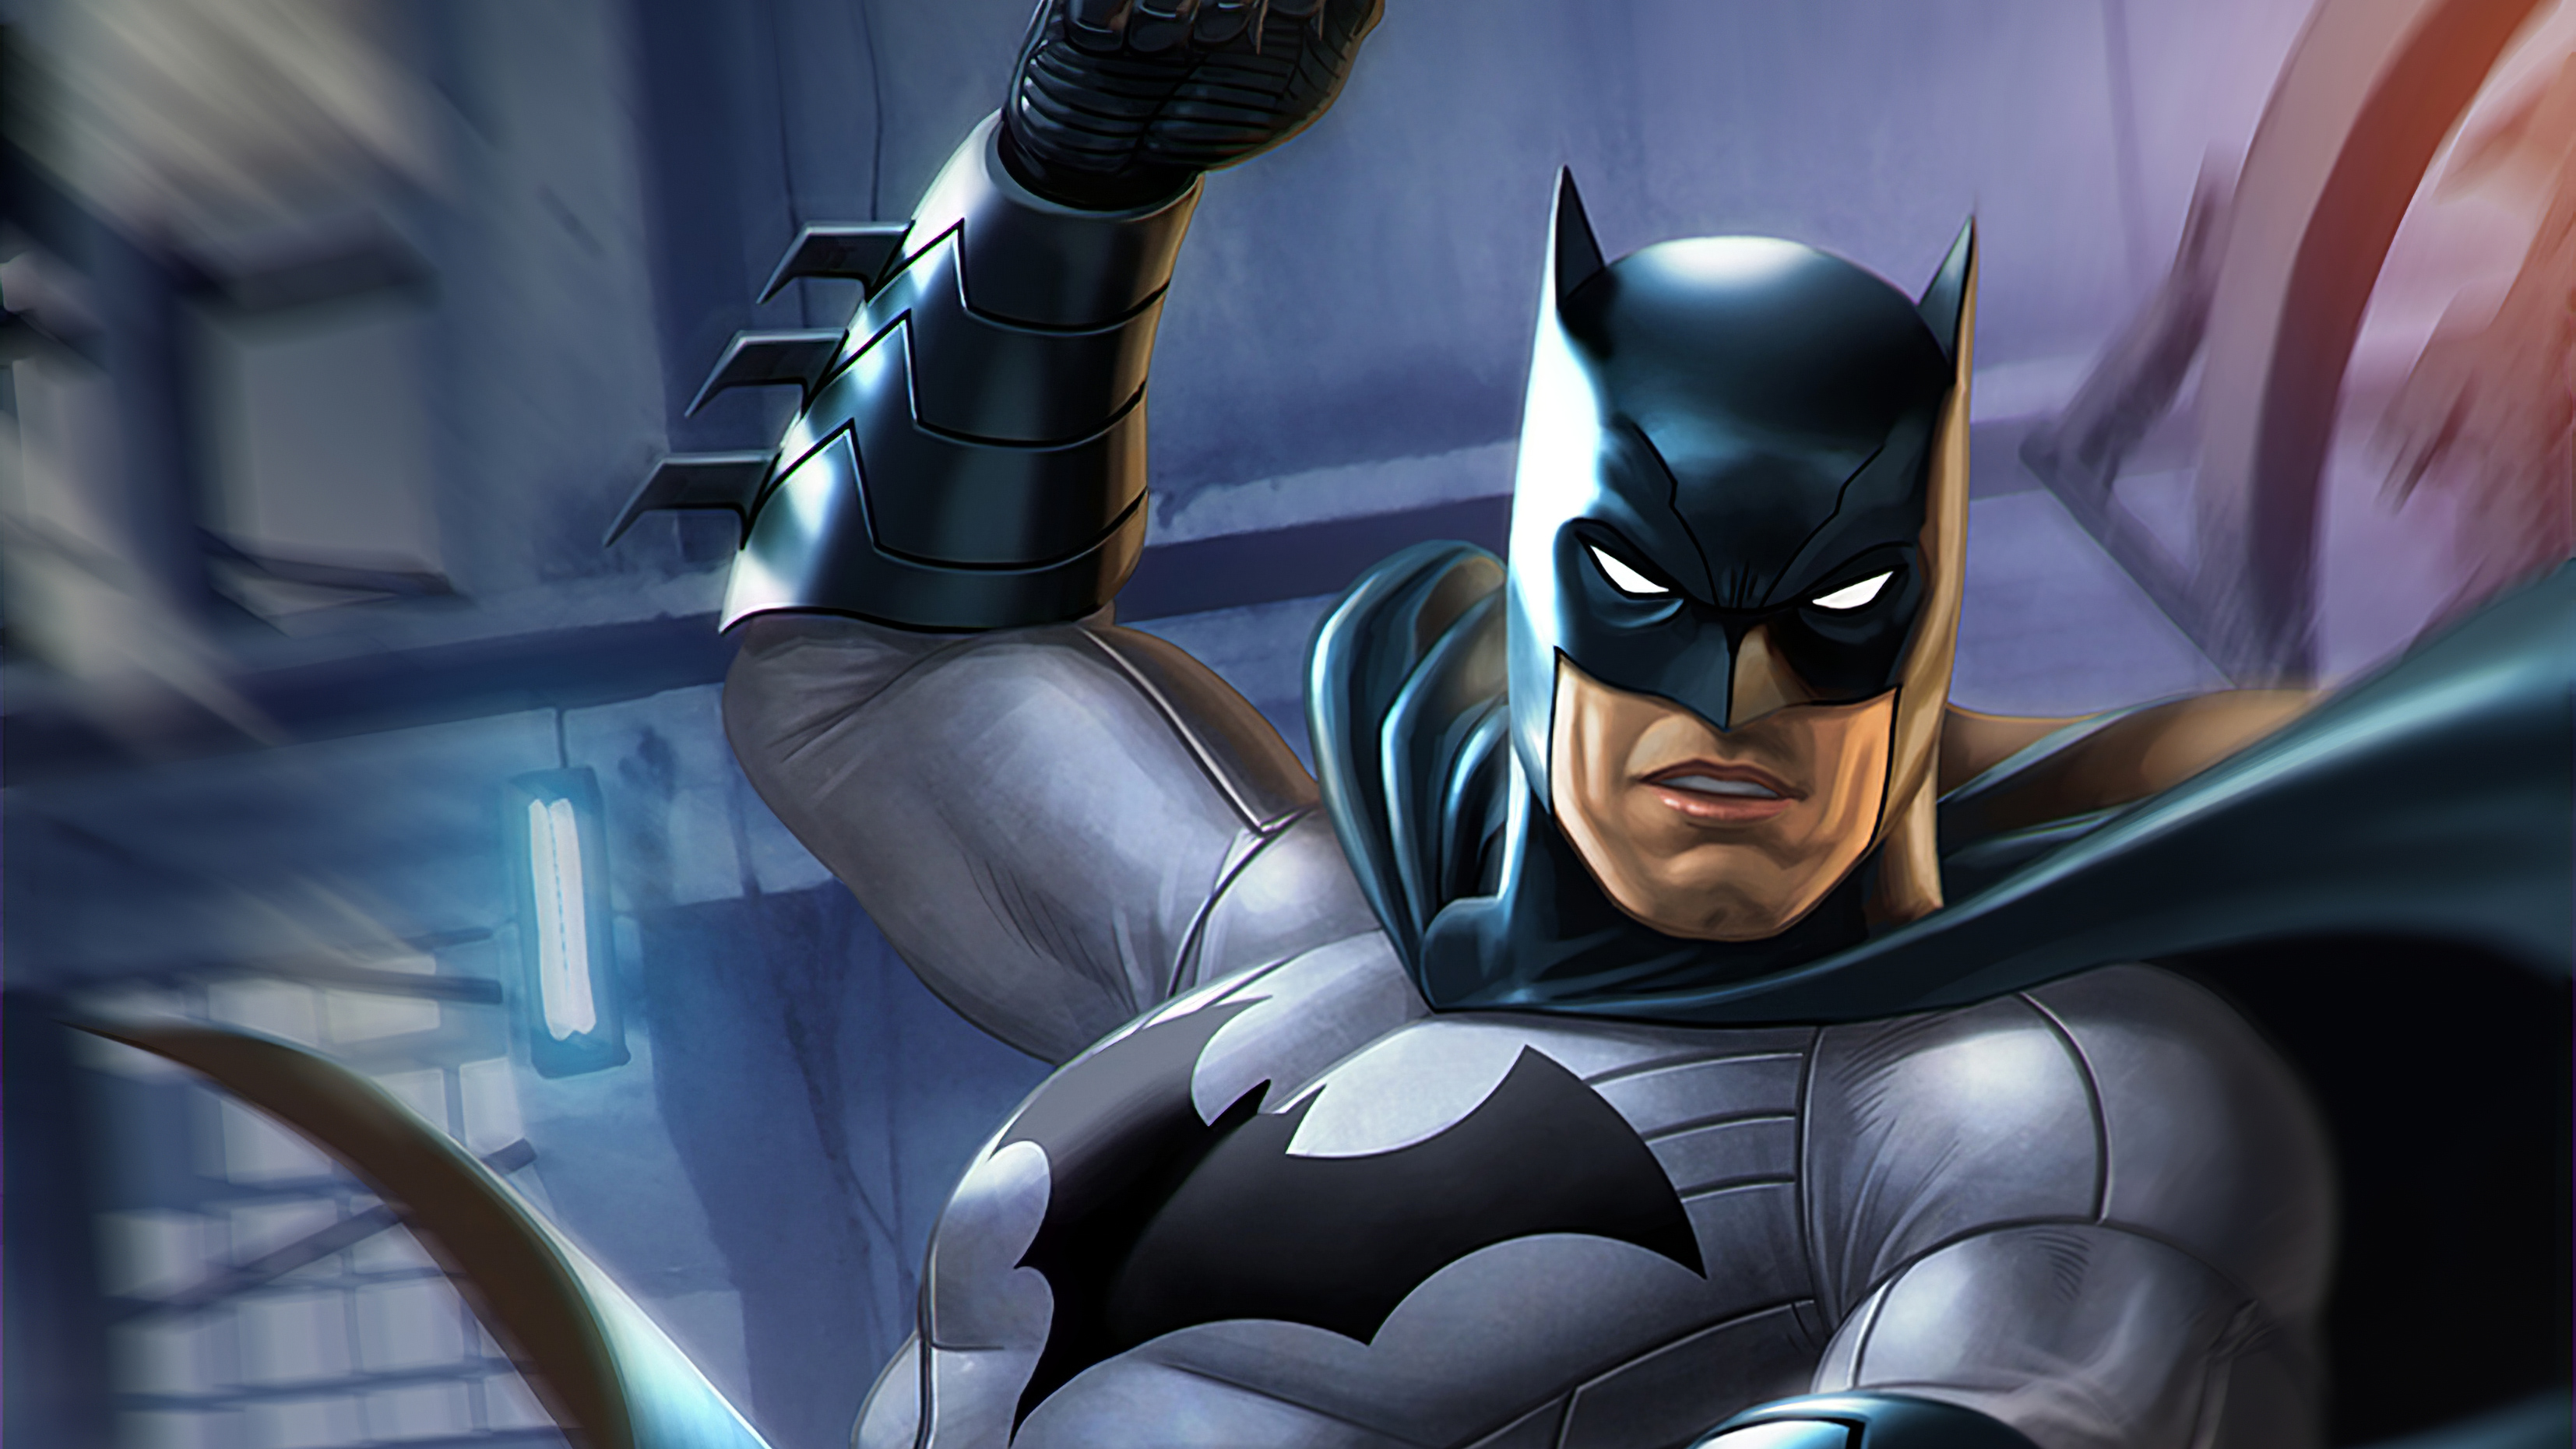 Batman And The Flash Dc Comics Wallpapers